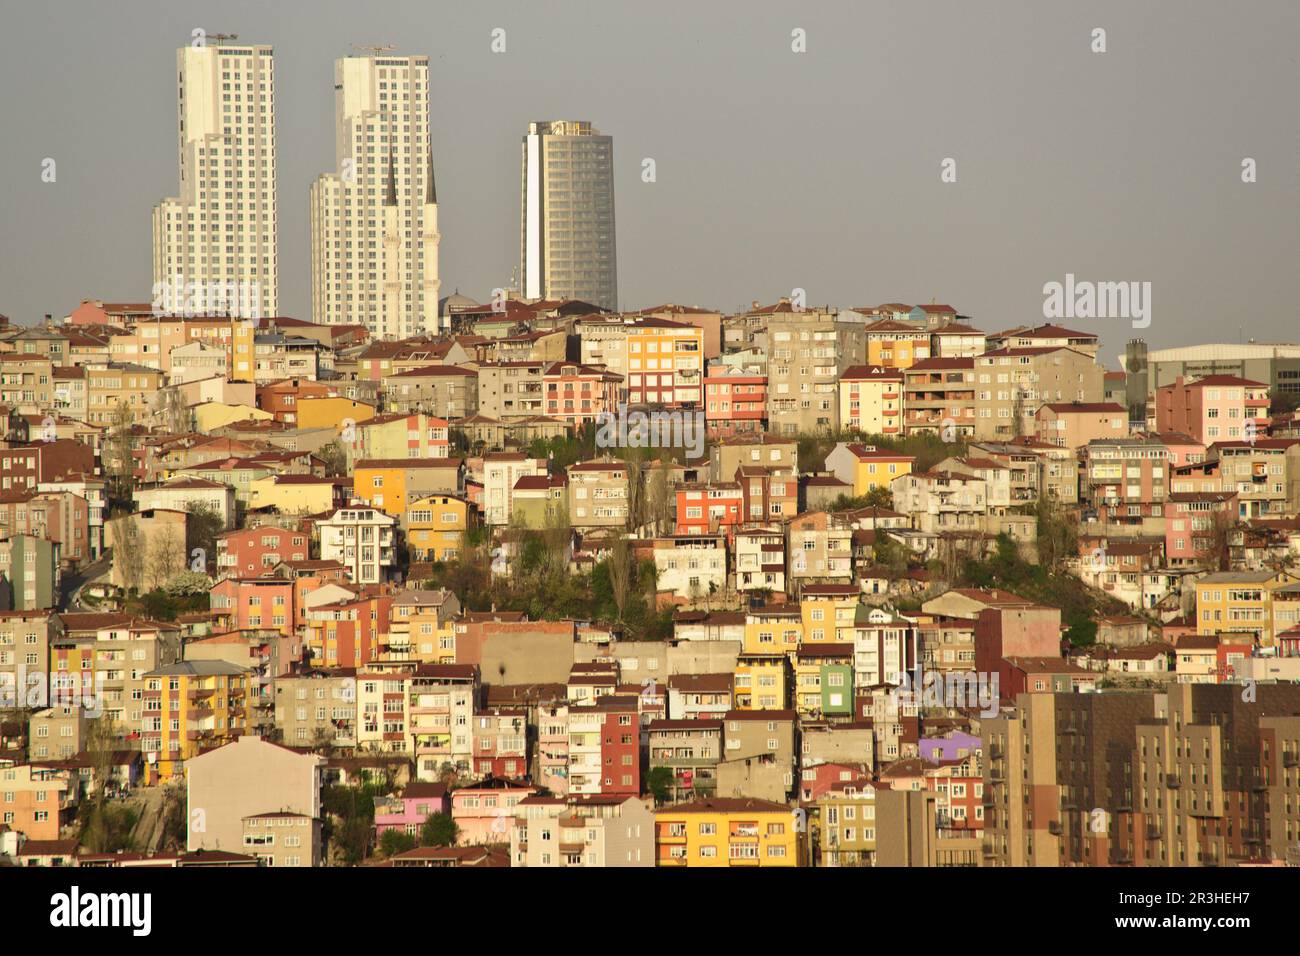 Estambul, Kagithane.Turquia. Asia. Stock Photo